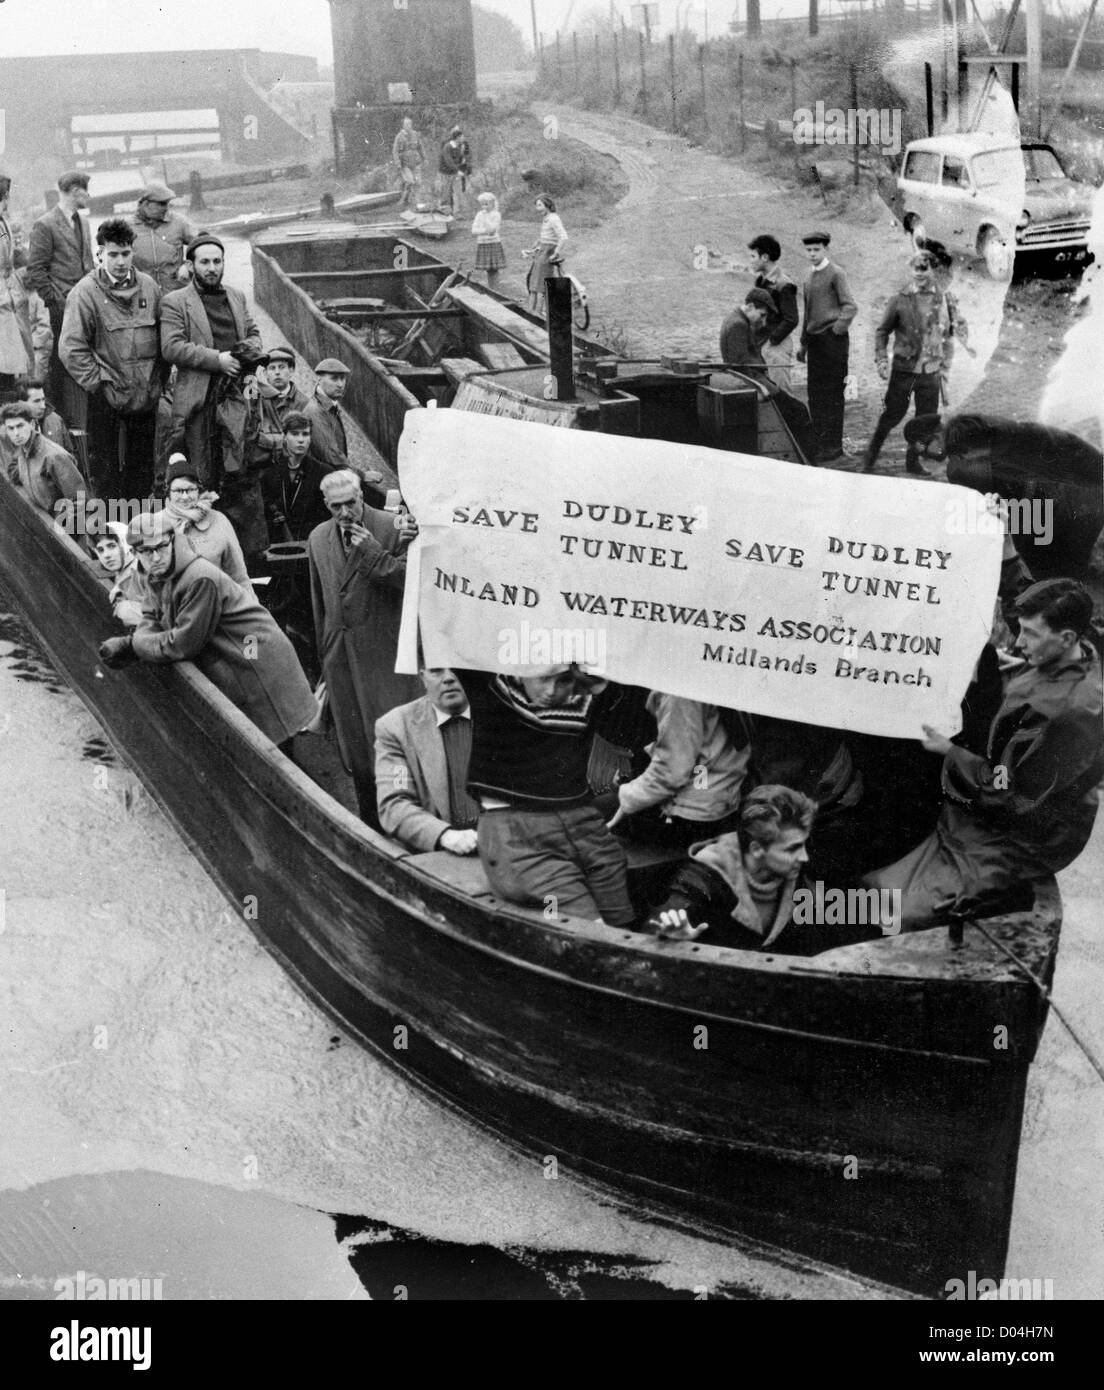 Protestierende fahren zu ihren Booten, um den Dudley Canal Tunnel zu retten 23/10/1960. Schwarze Landkanäle 1960er Jahre Protestkampagne Erhaltung Wasserstraßen Großbritannien Stockfoto